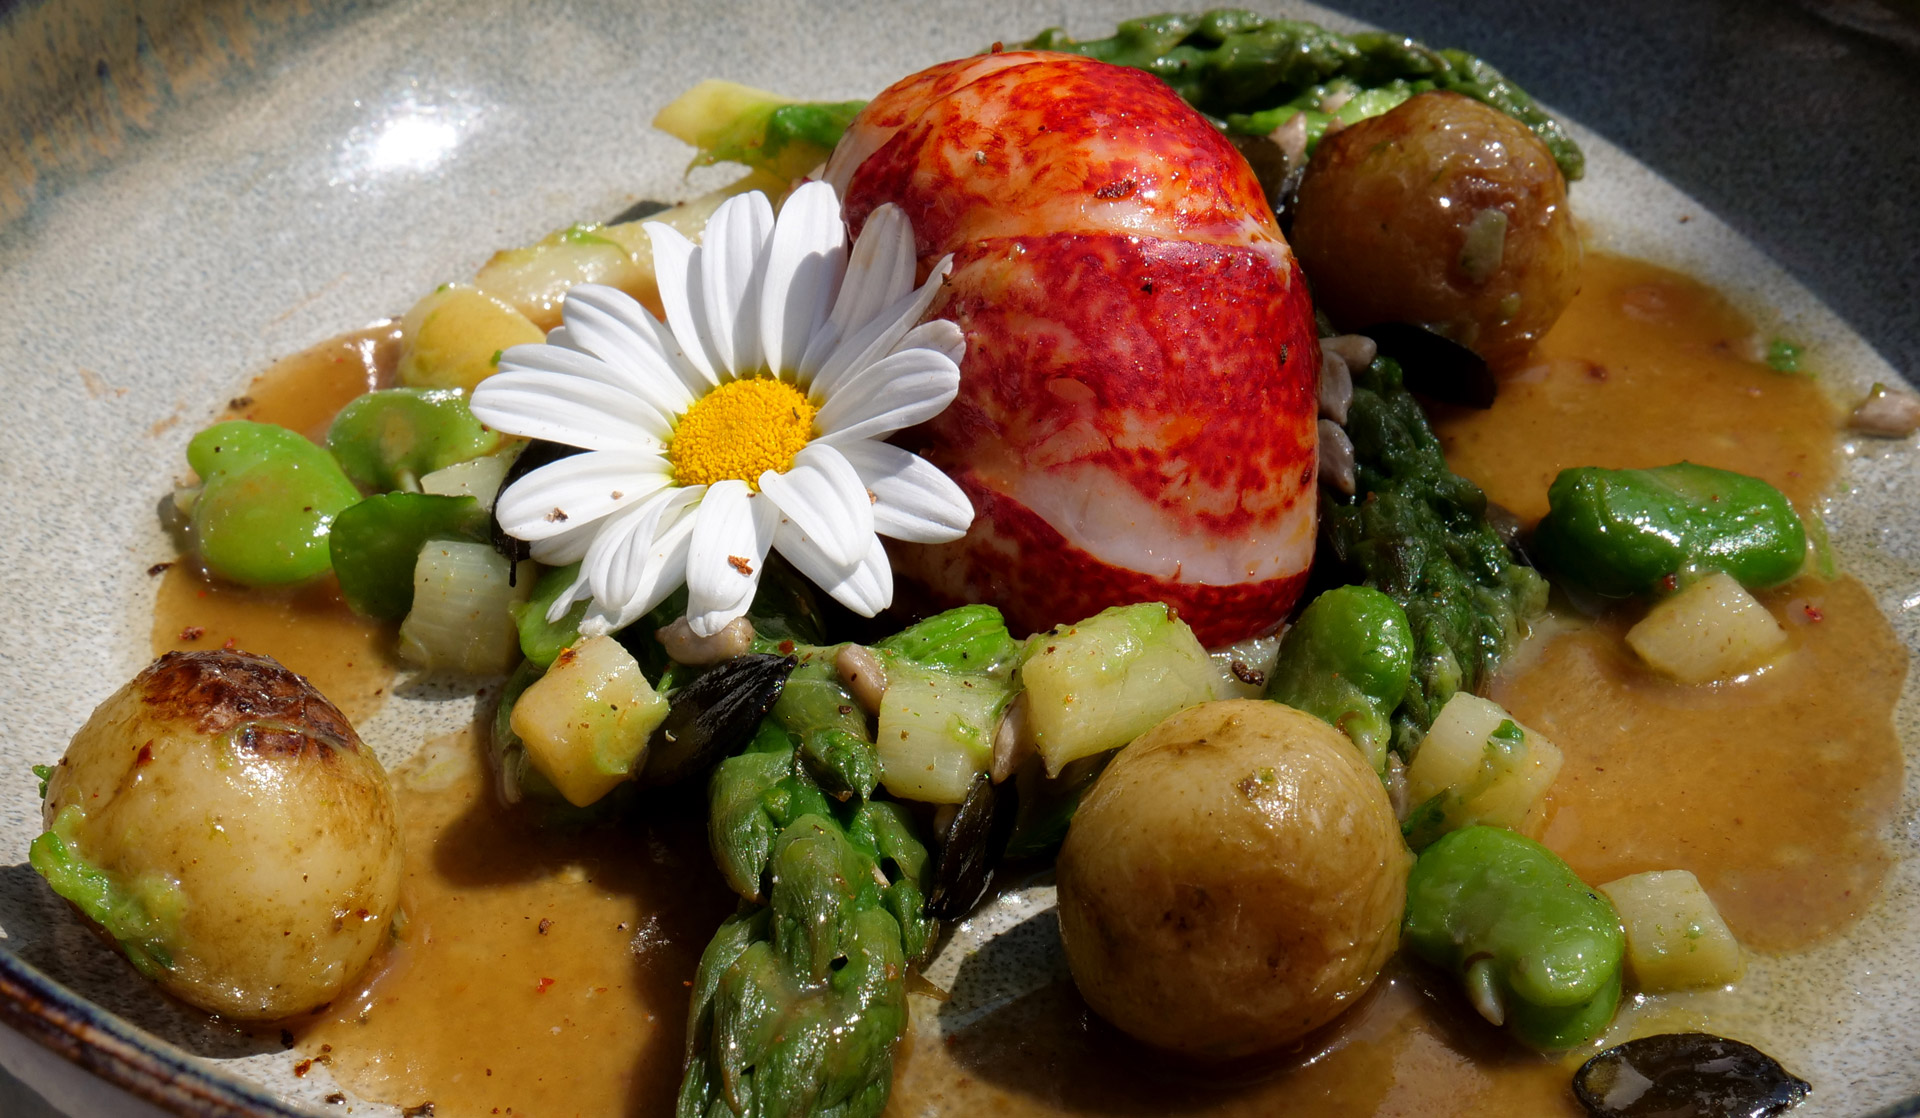 Saveurs de printemps au Grand Four, restaurant romantique à Noirmoutier. Sauté de homard, asperges vertes, fevettes, sirtena de Noirmoutier et réduction de jus de viande, fleur de marguerite comestible.